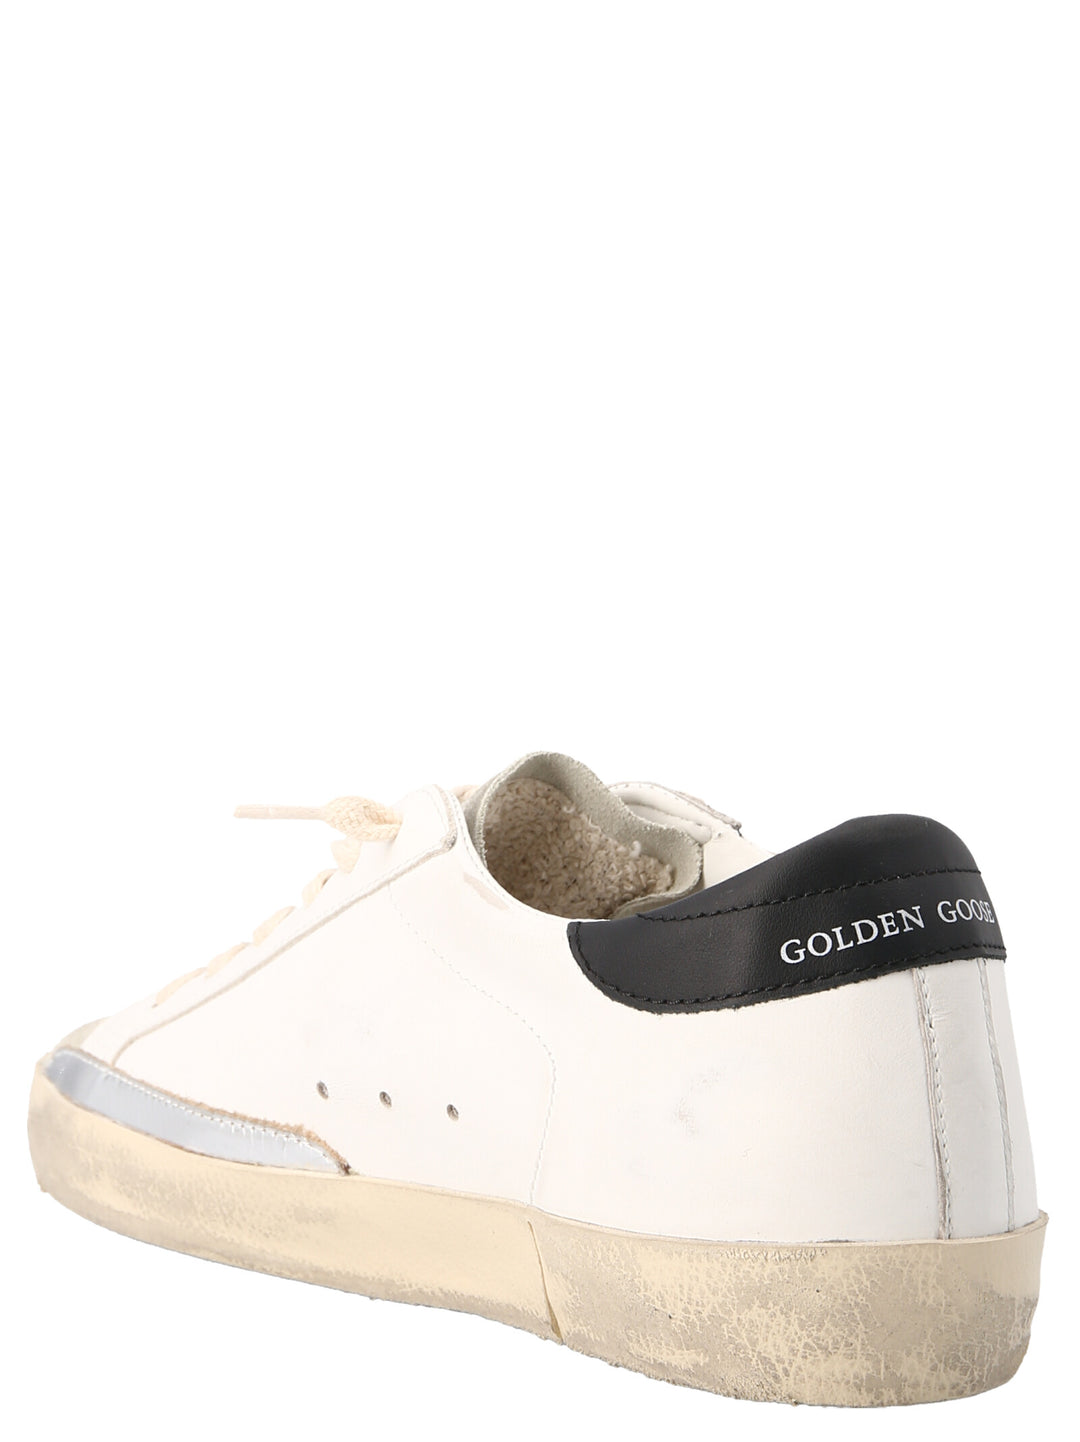 'Superstar' Sneakers Bianco/nero